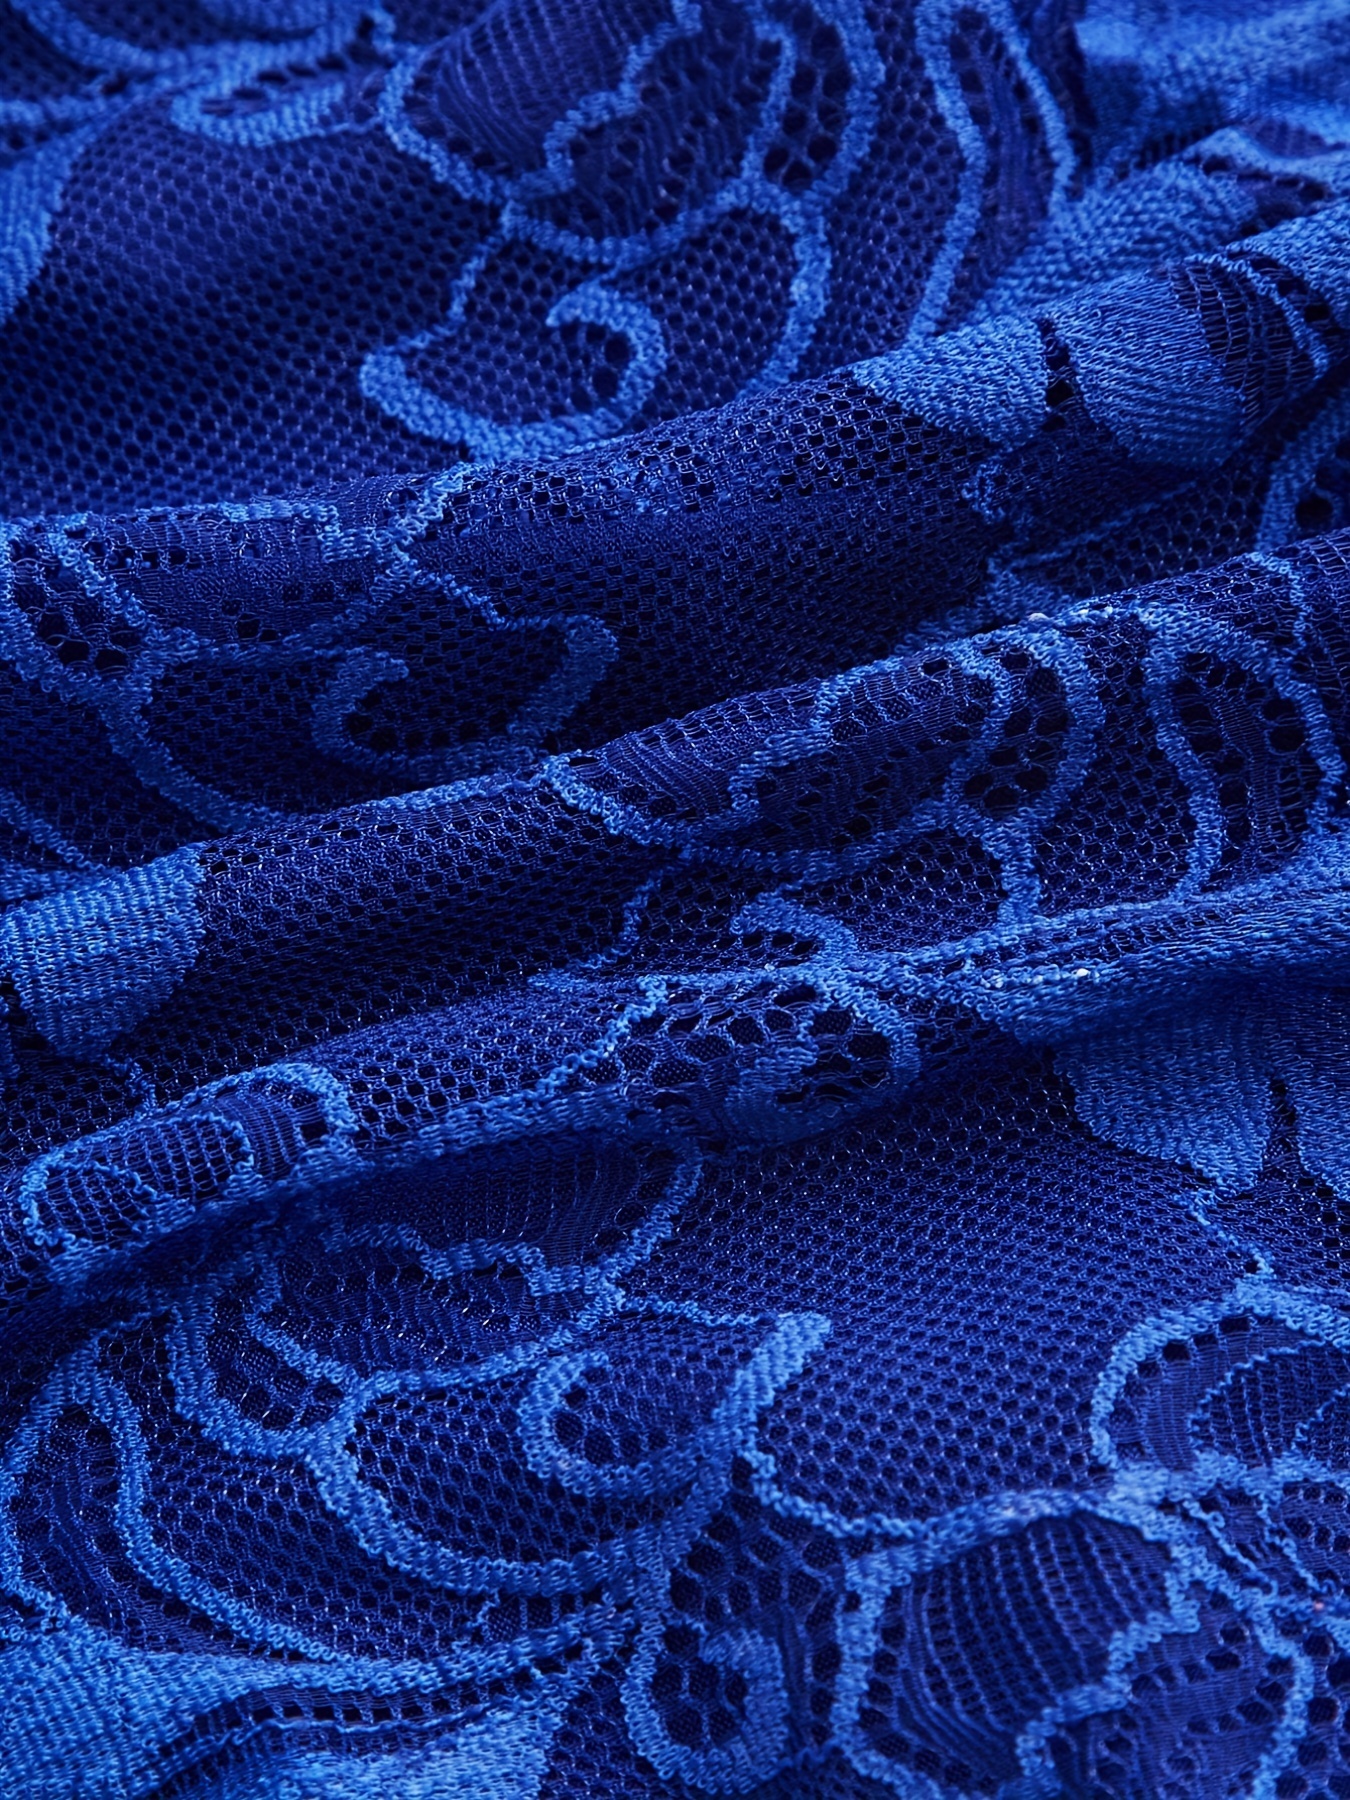 NWT Bra 40C Blue Underviews Lace Cotton Embroidery Floral Plus